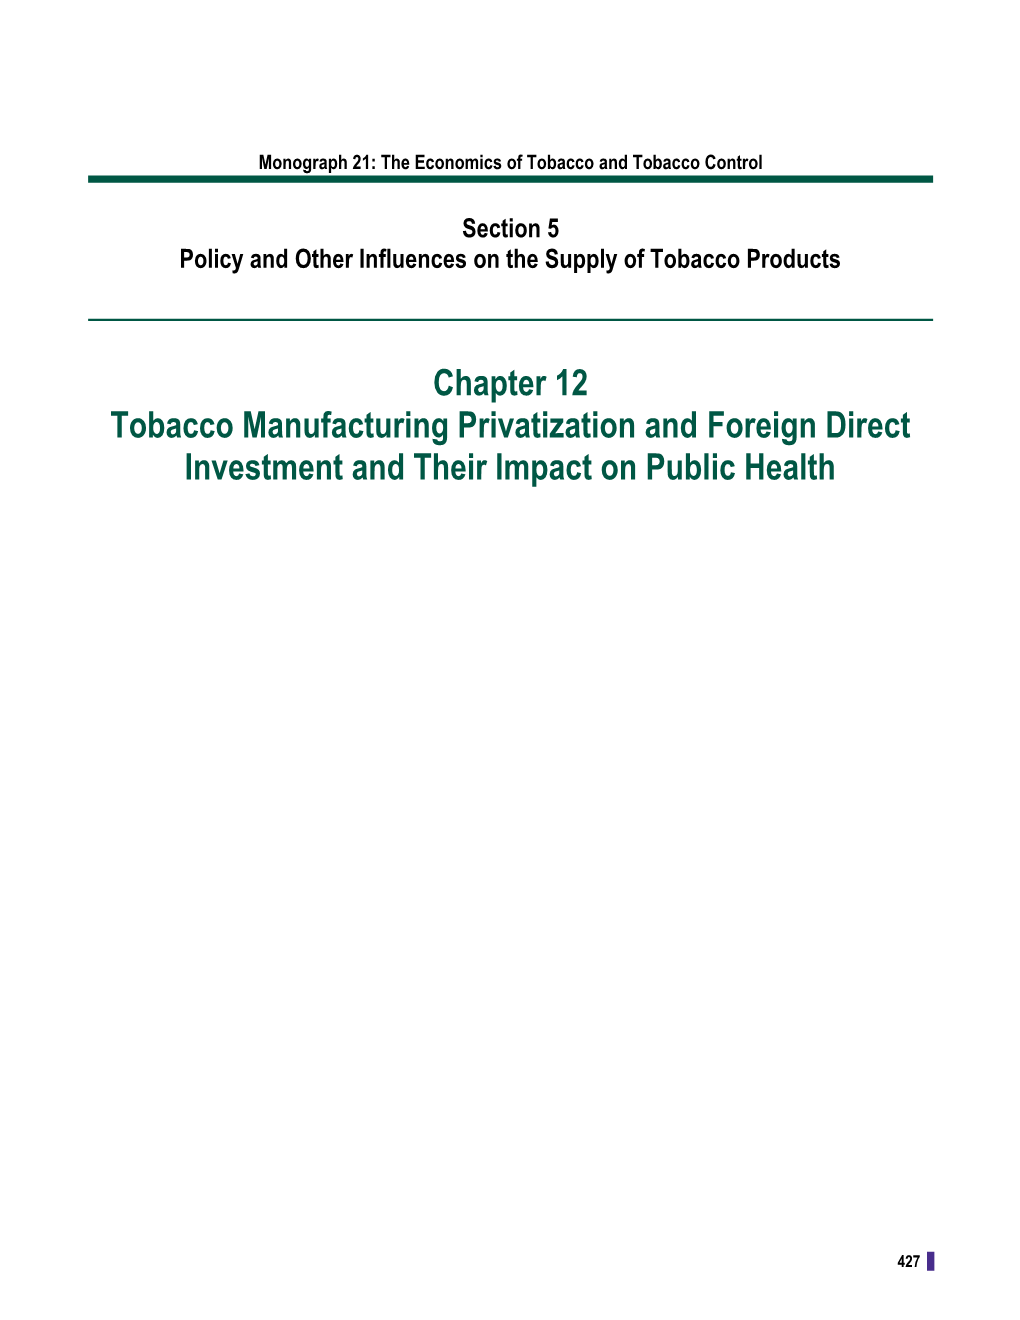 Monograph 21: the Economics of Tobacco and Tobacco Control